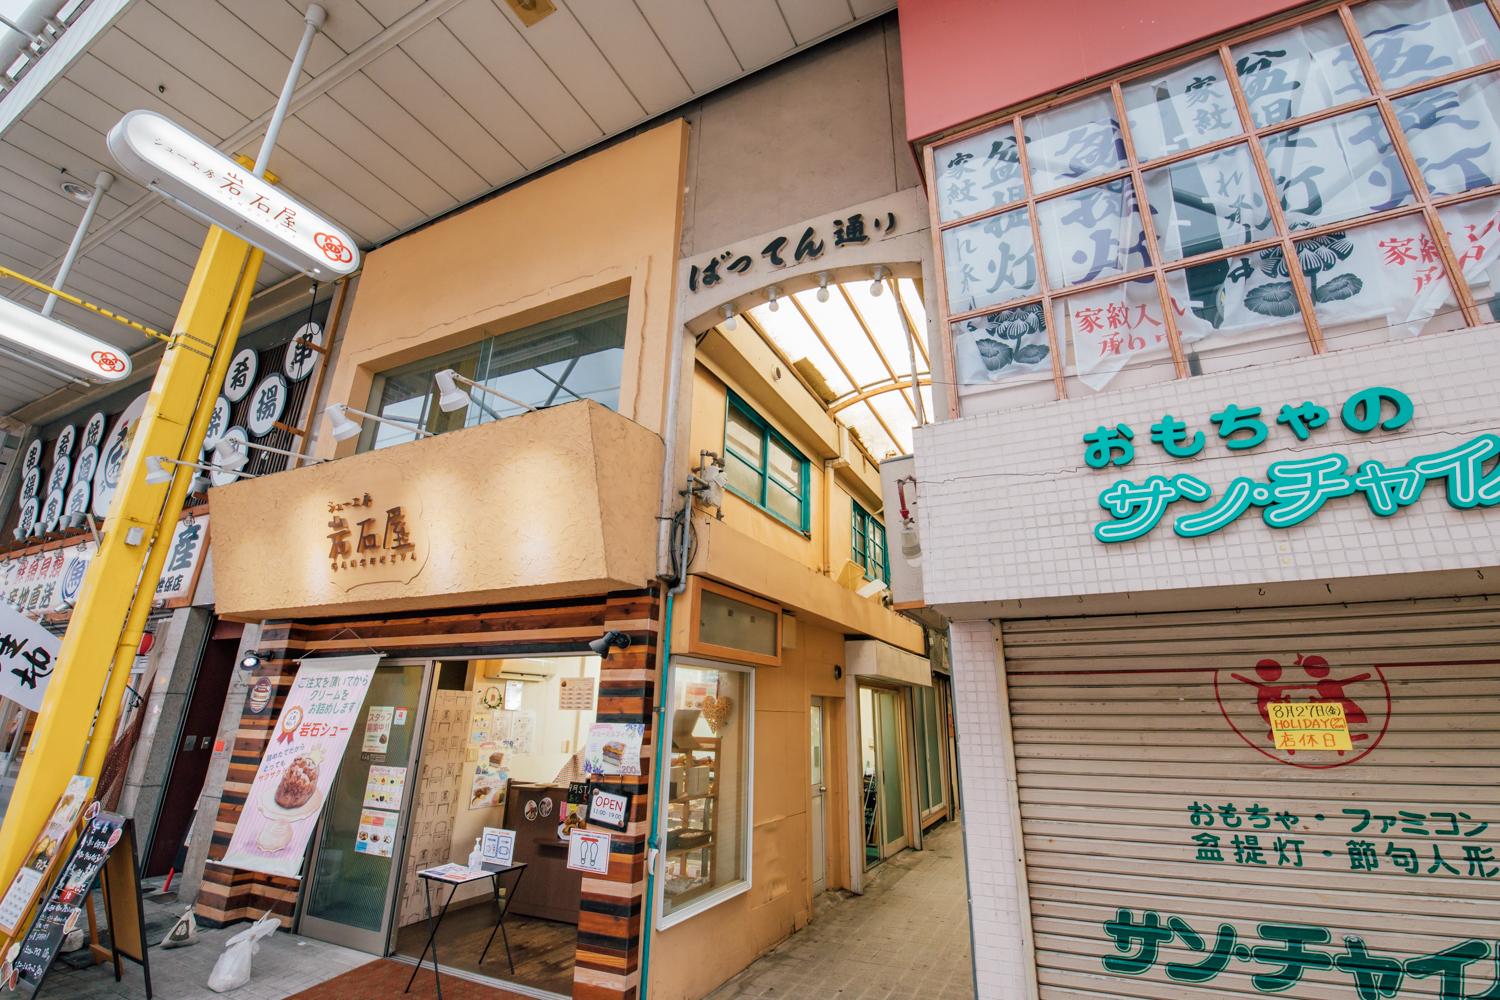 日本一長い商店街の中の“ミニミニ商店街”「ばってん通り」「ぎんた通り」を探せ!!-0